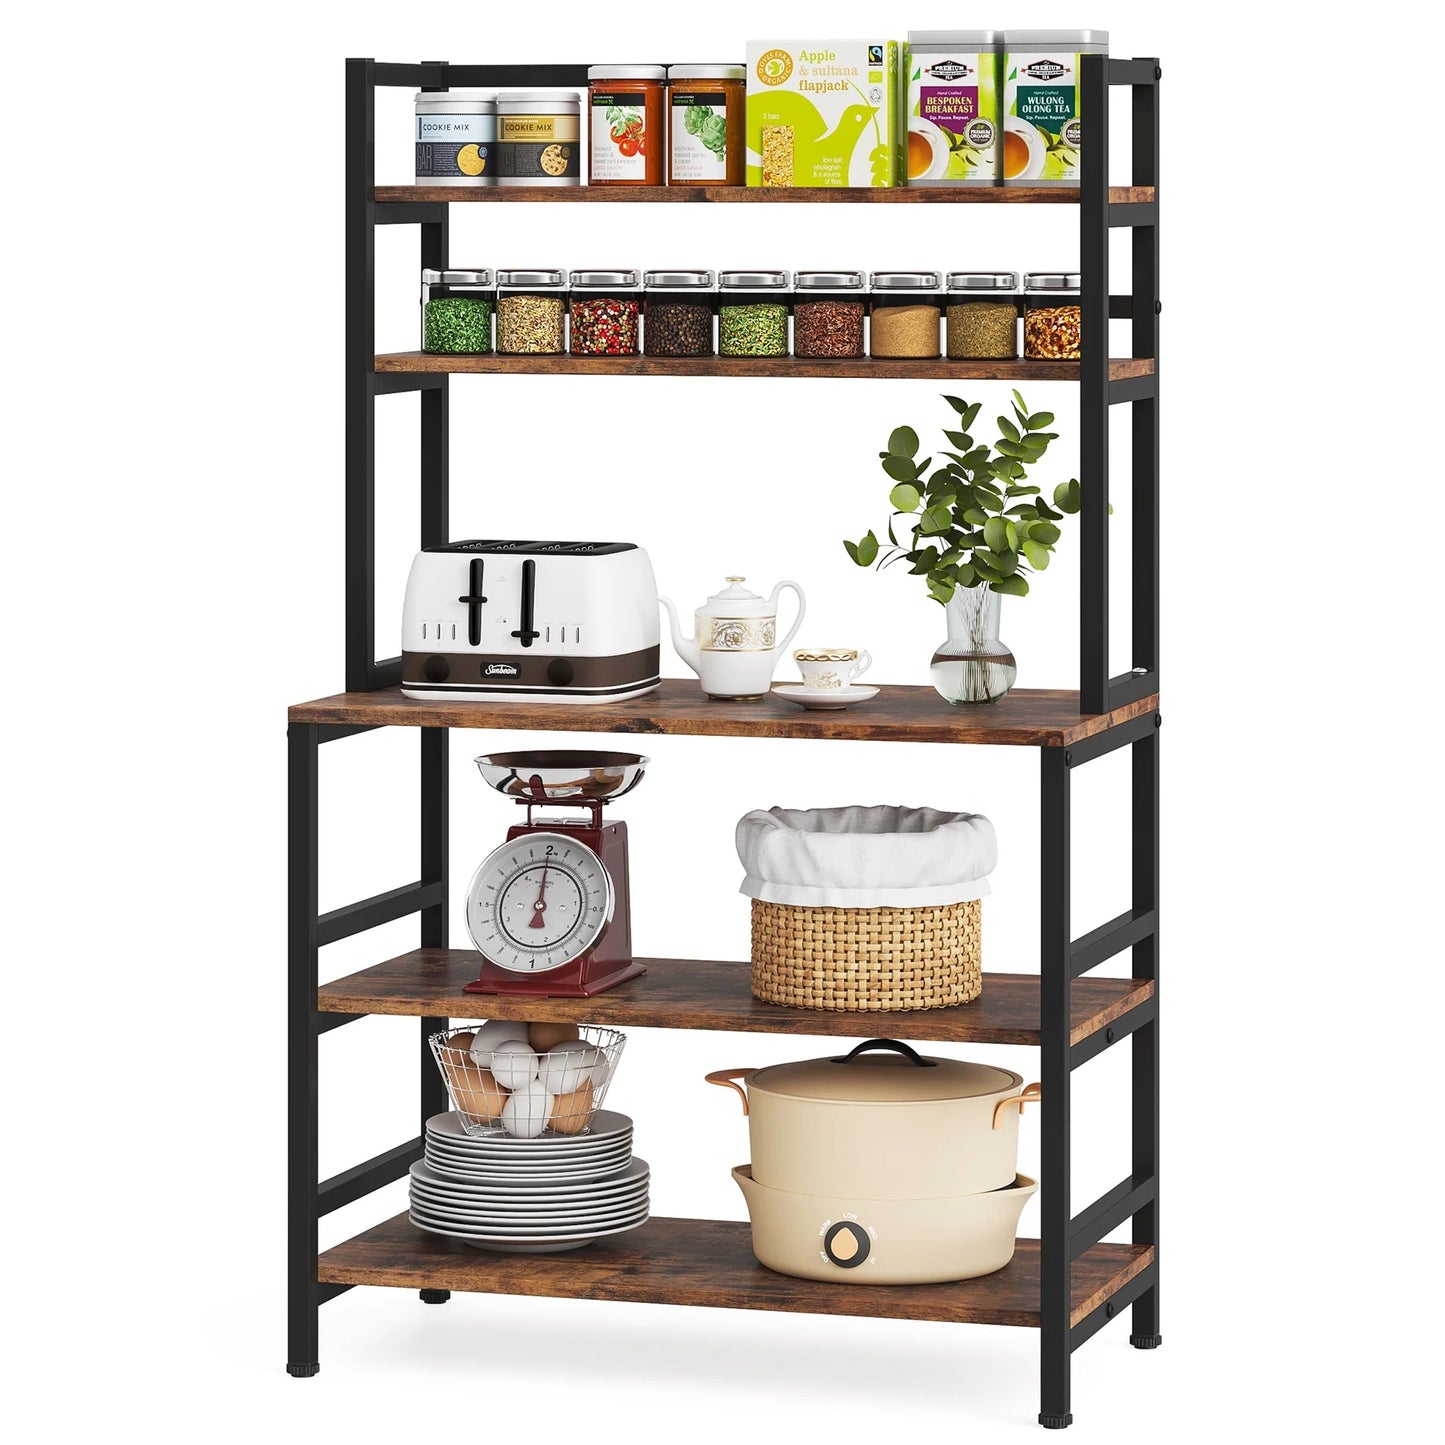 Tribesigns Kitchen Baker's Rack, 5-Tier Freestanding Kitchen Utility Storage Shelf